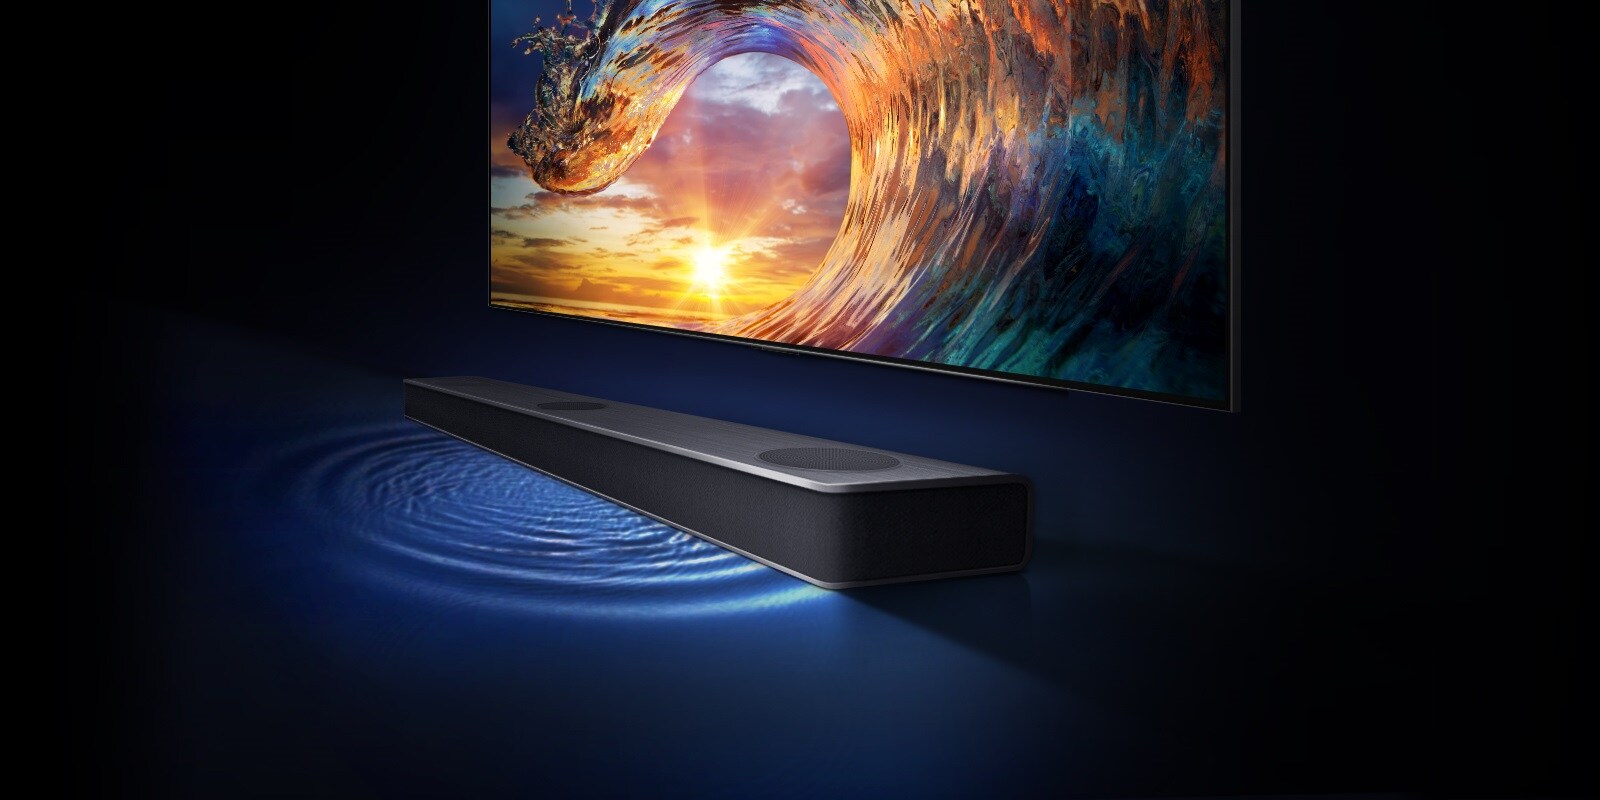 El televisor muestra el cielo del atardecer y las olas con los colores del arco iris. Hay una barra de sonido debajo del televisor y la onda de sonido está en el suelo.